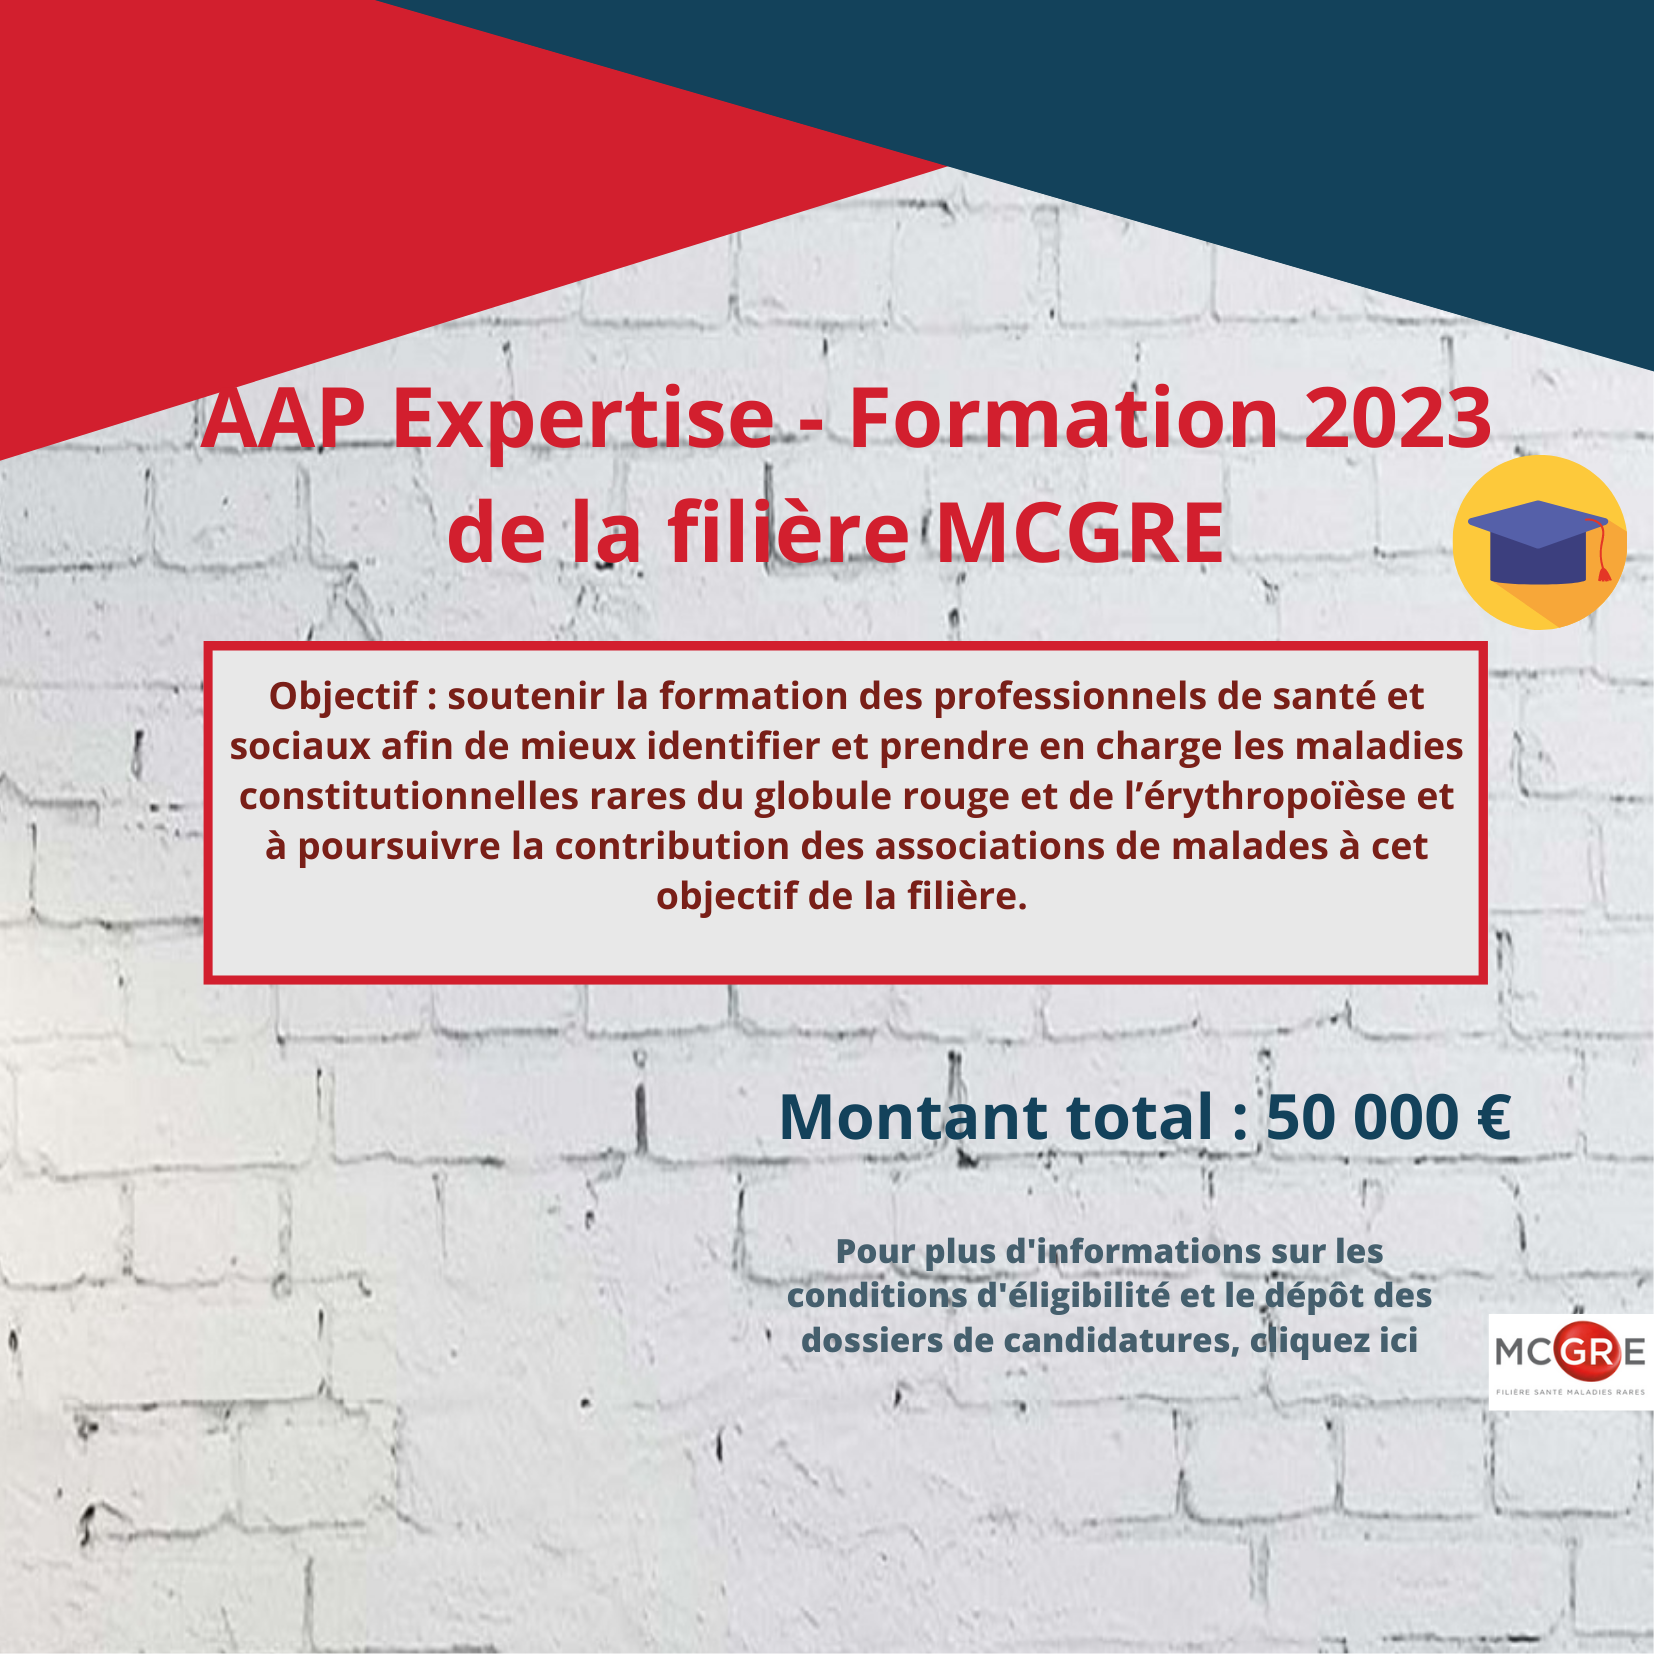 AAP Expertise - Formation 2023 de la filière MCGRE